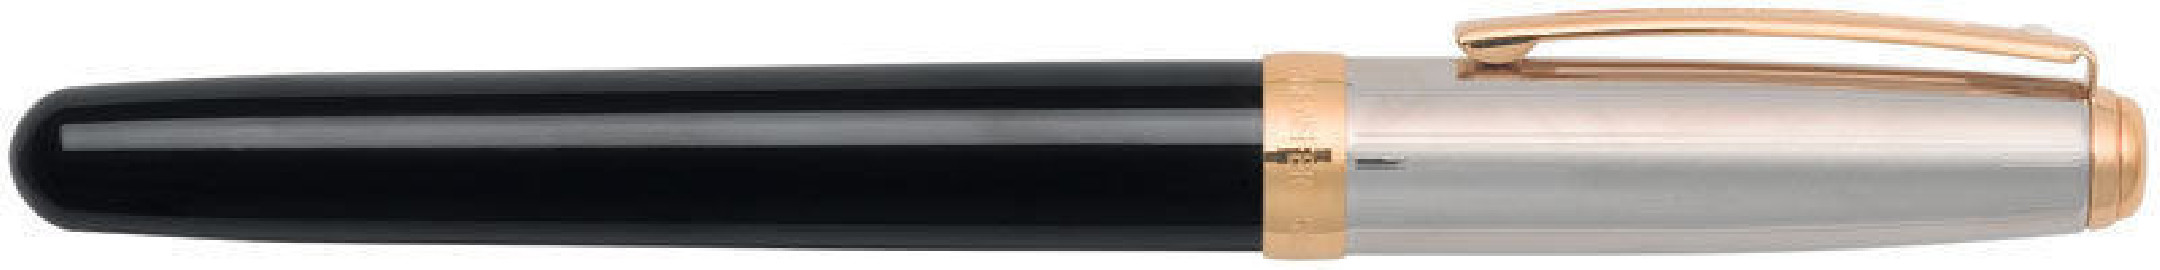 Sheaffer Prelude gloss black barell & chrome plated cap GT Rollerball 337-1